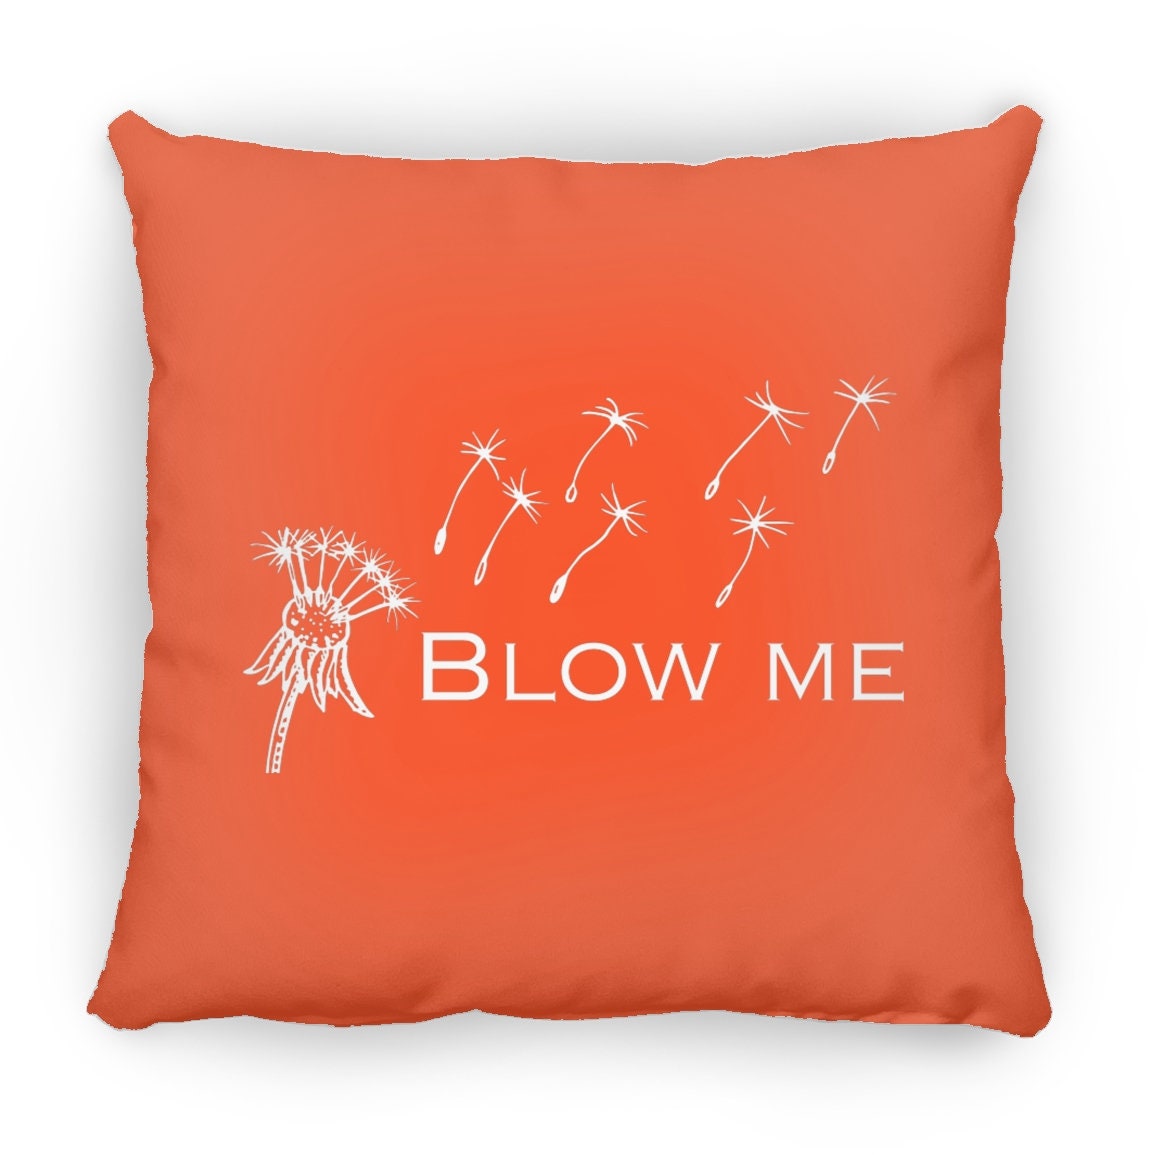 Blow Me Throw Pillow